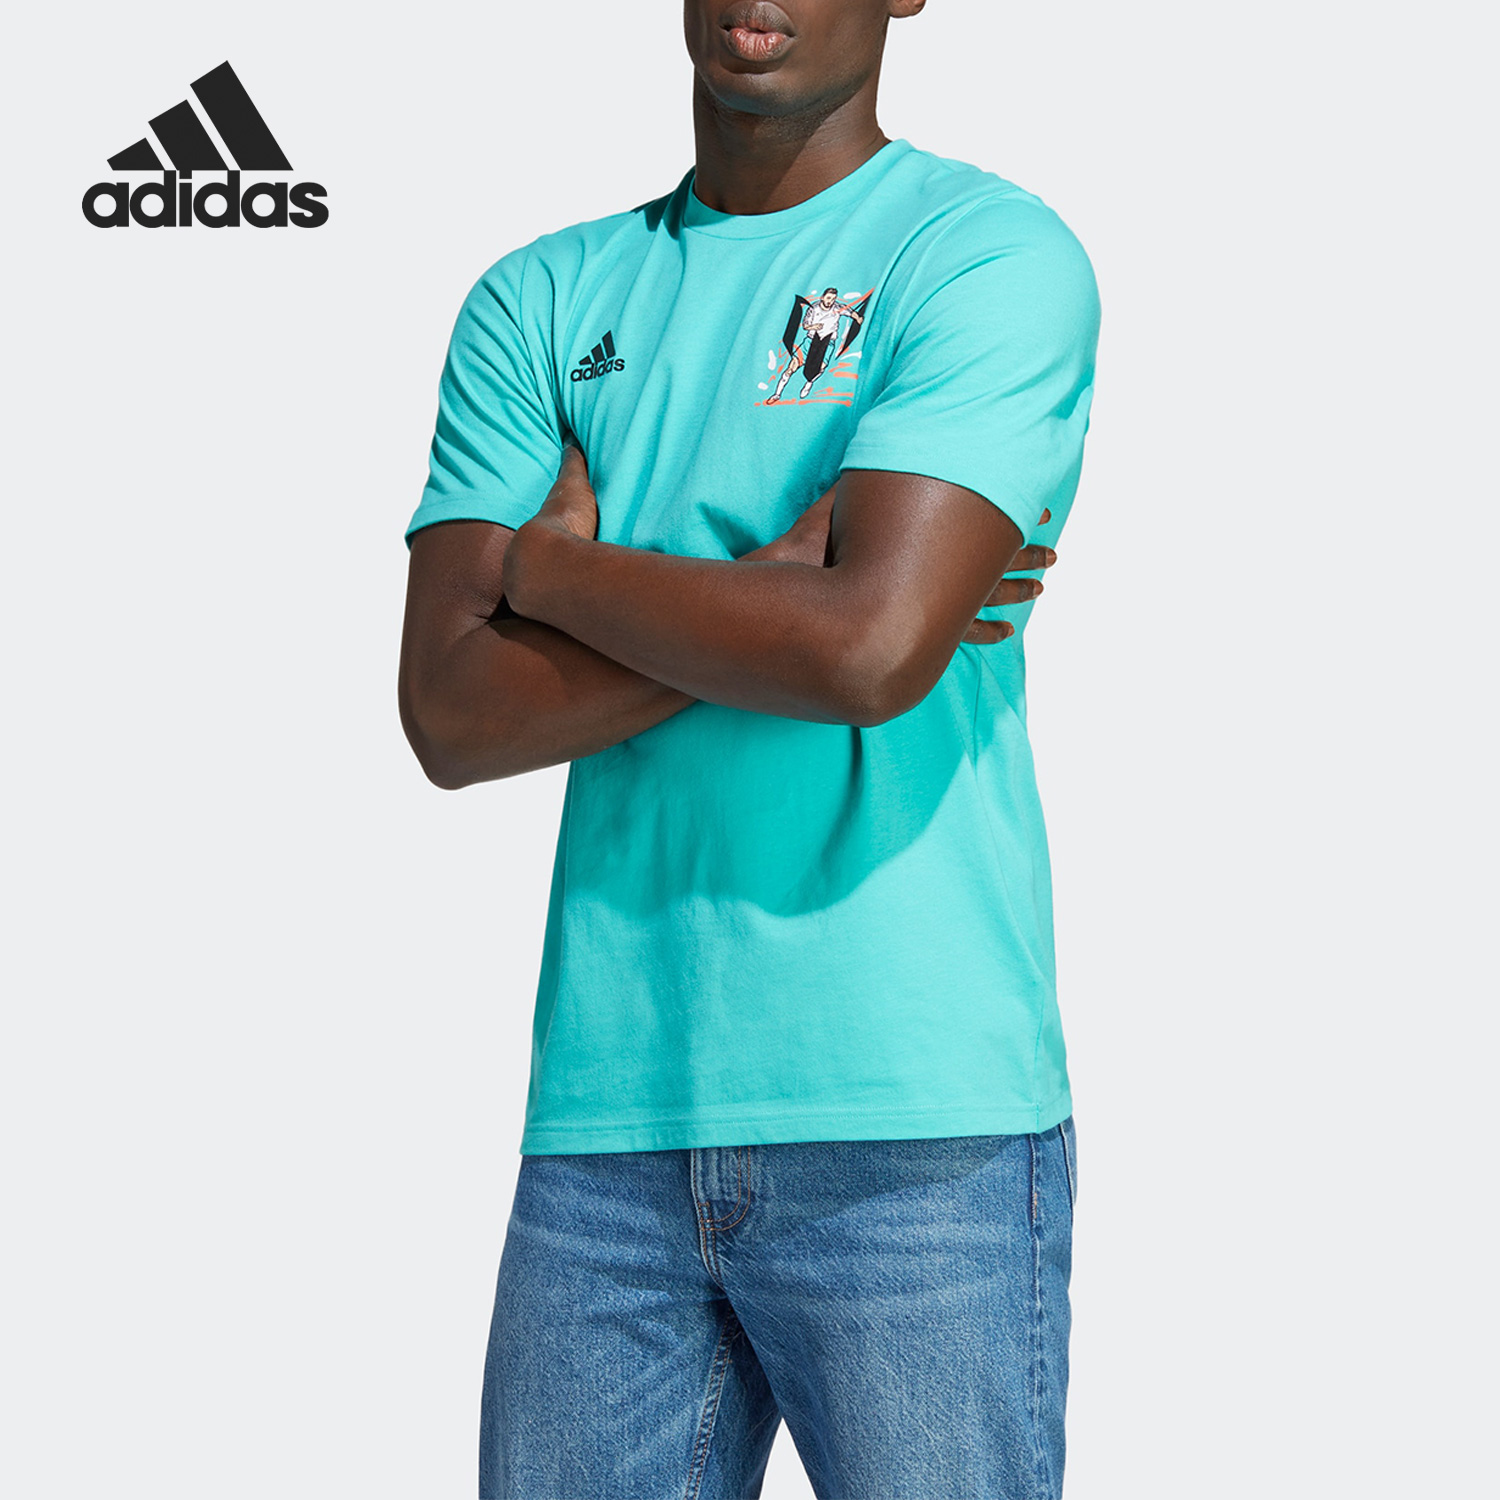 Adidas/阿迪达斯M MESSI G T梅西足球男子运动短袖HY8704